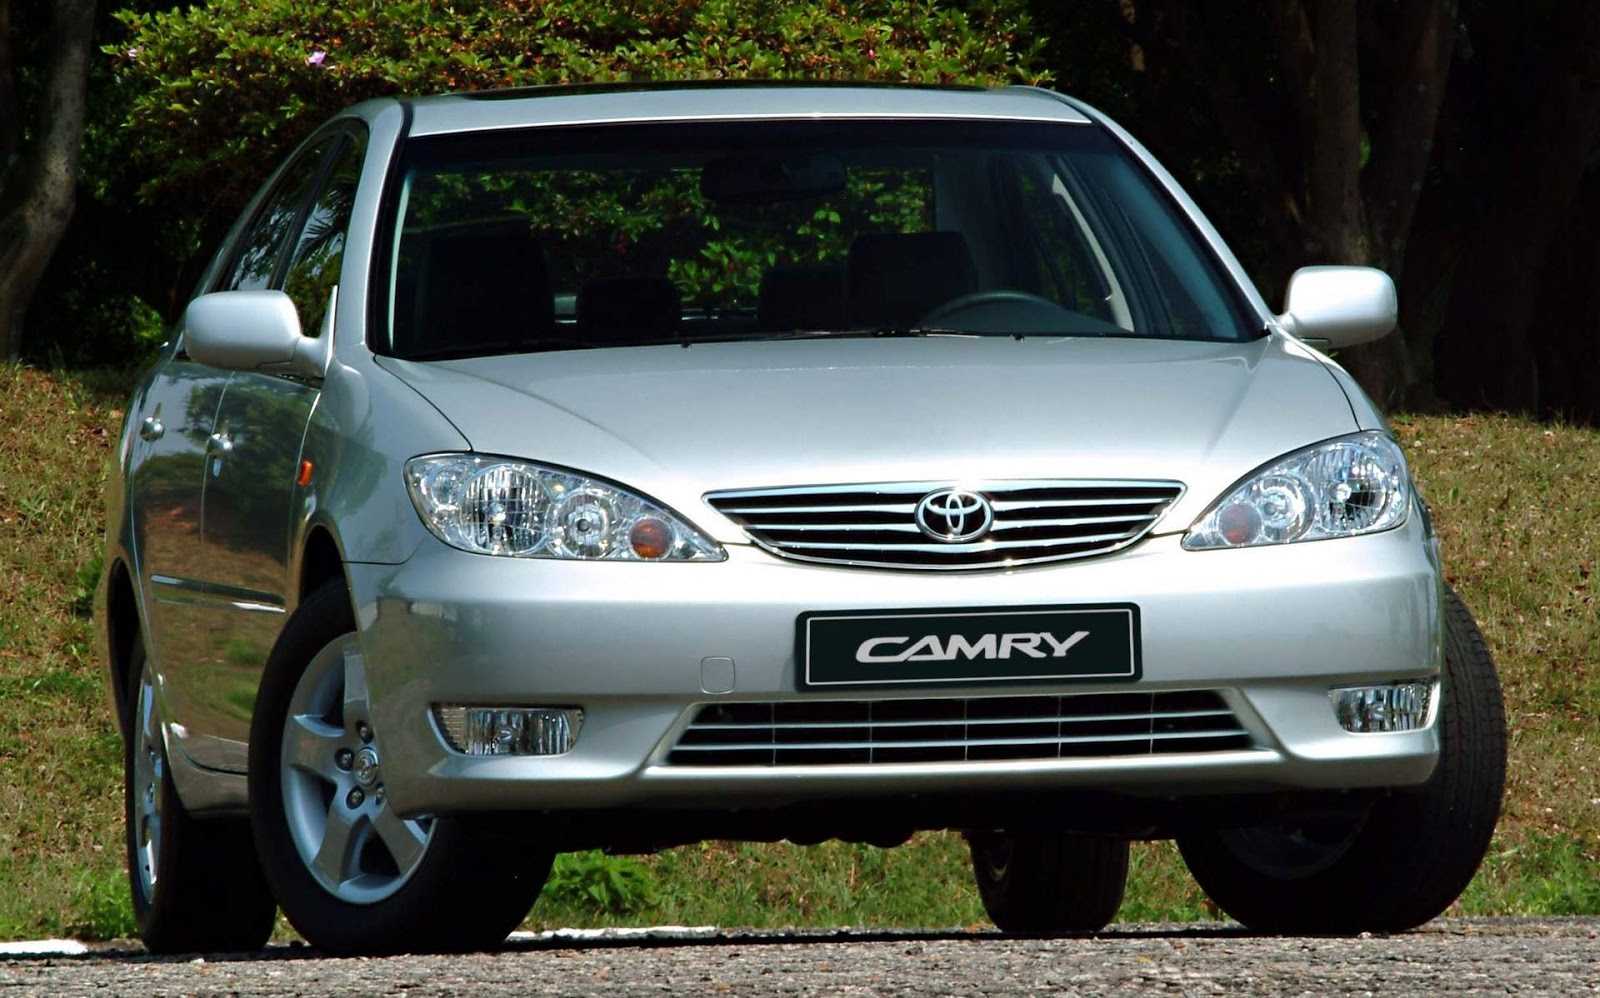 Toyota Camry 2003: fotos, consumo, desempenho - detalhes